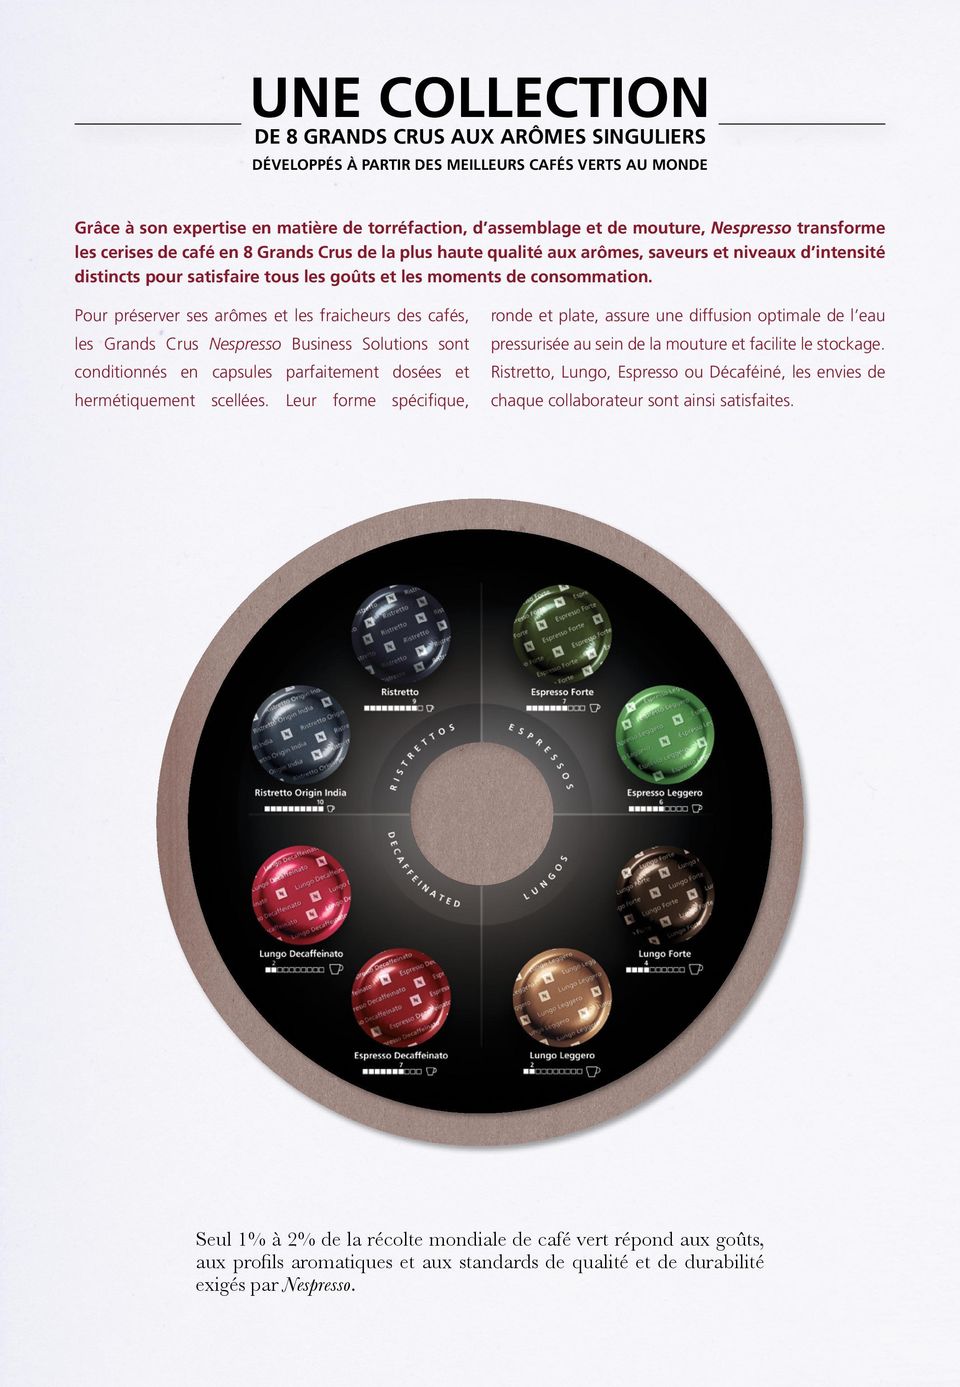 Pour préserver ses arômes et les fraicheurs des cafés, ronde et plate, assure une diffusion optimale de l eau les Grands Crus Nespresso Business Solutions sont pressurisée au sein de la mouture et